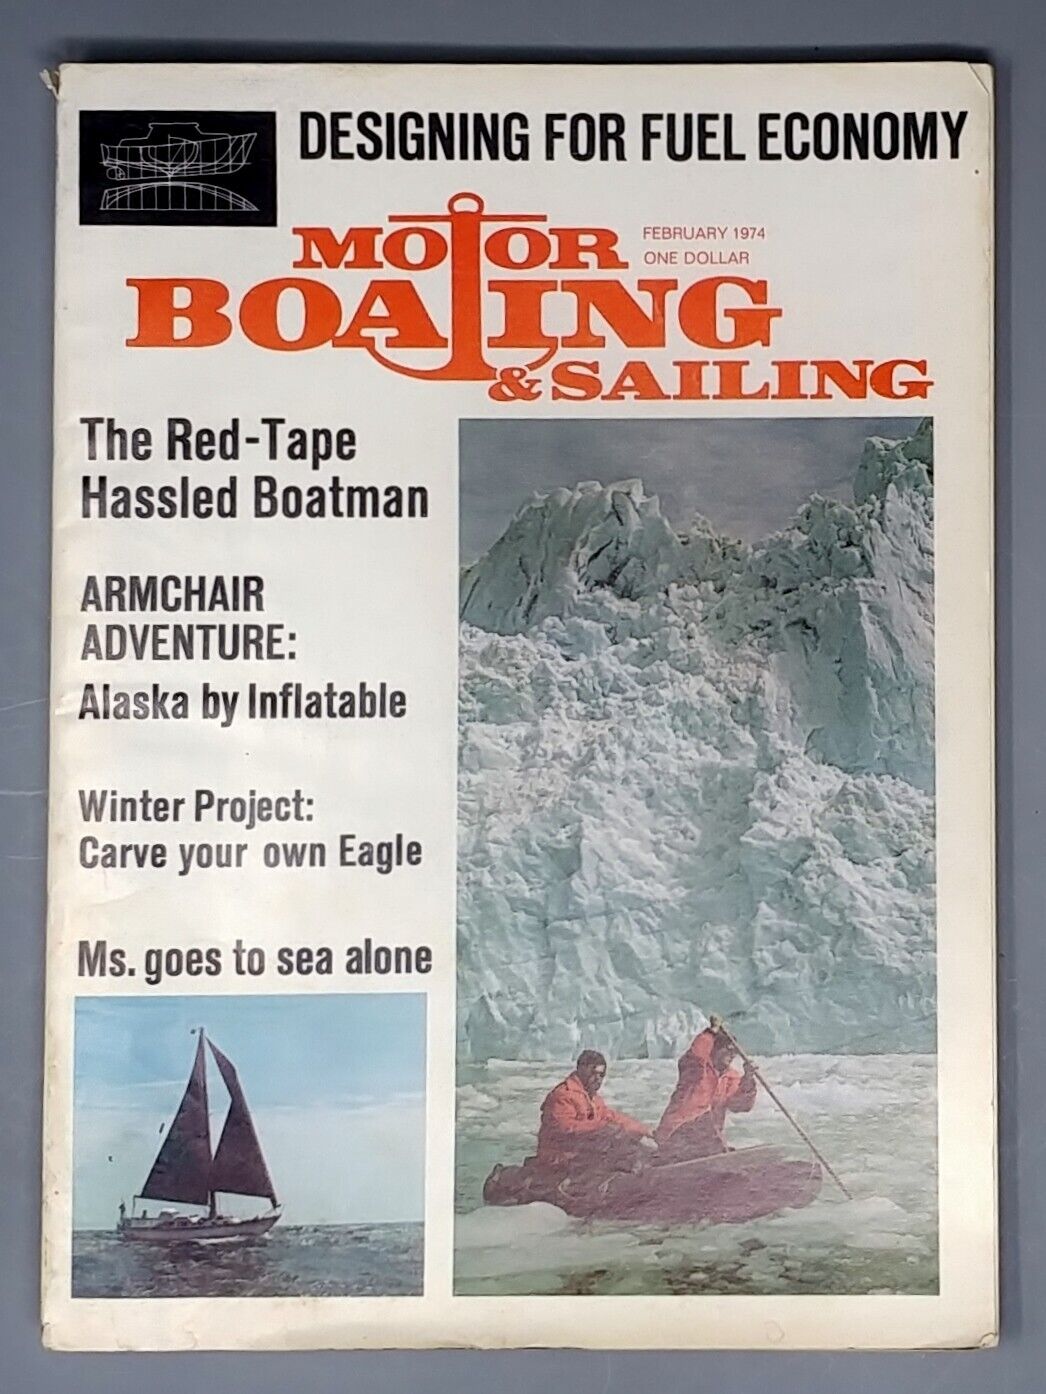 Motor Boating and Sailing Magazine February 1974 Vintage Retro Advertising